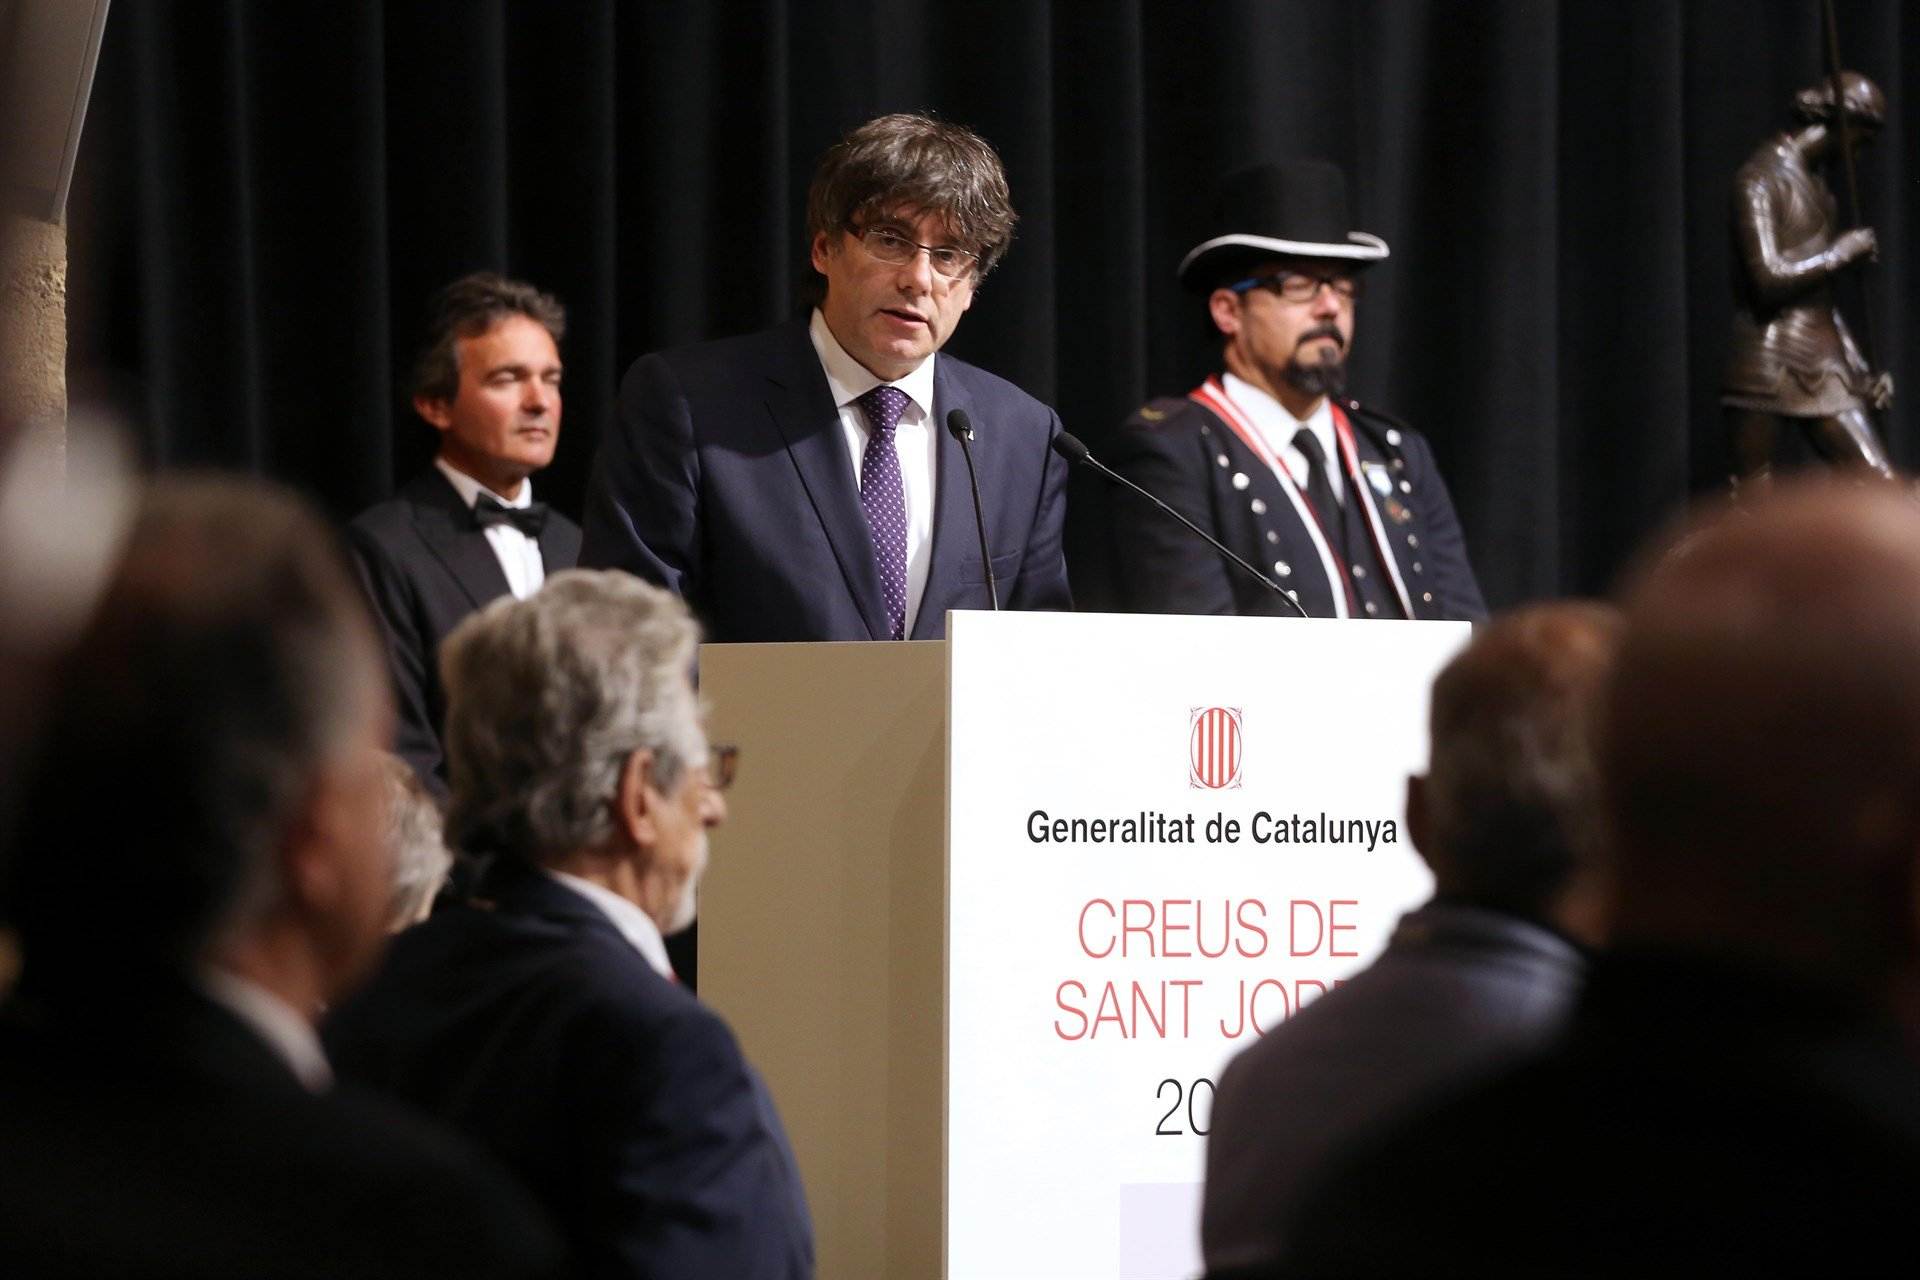 El Govern en el exilio propone una lista de Creus de Sant Jordi 2018